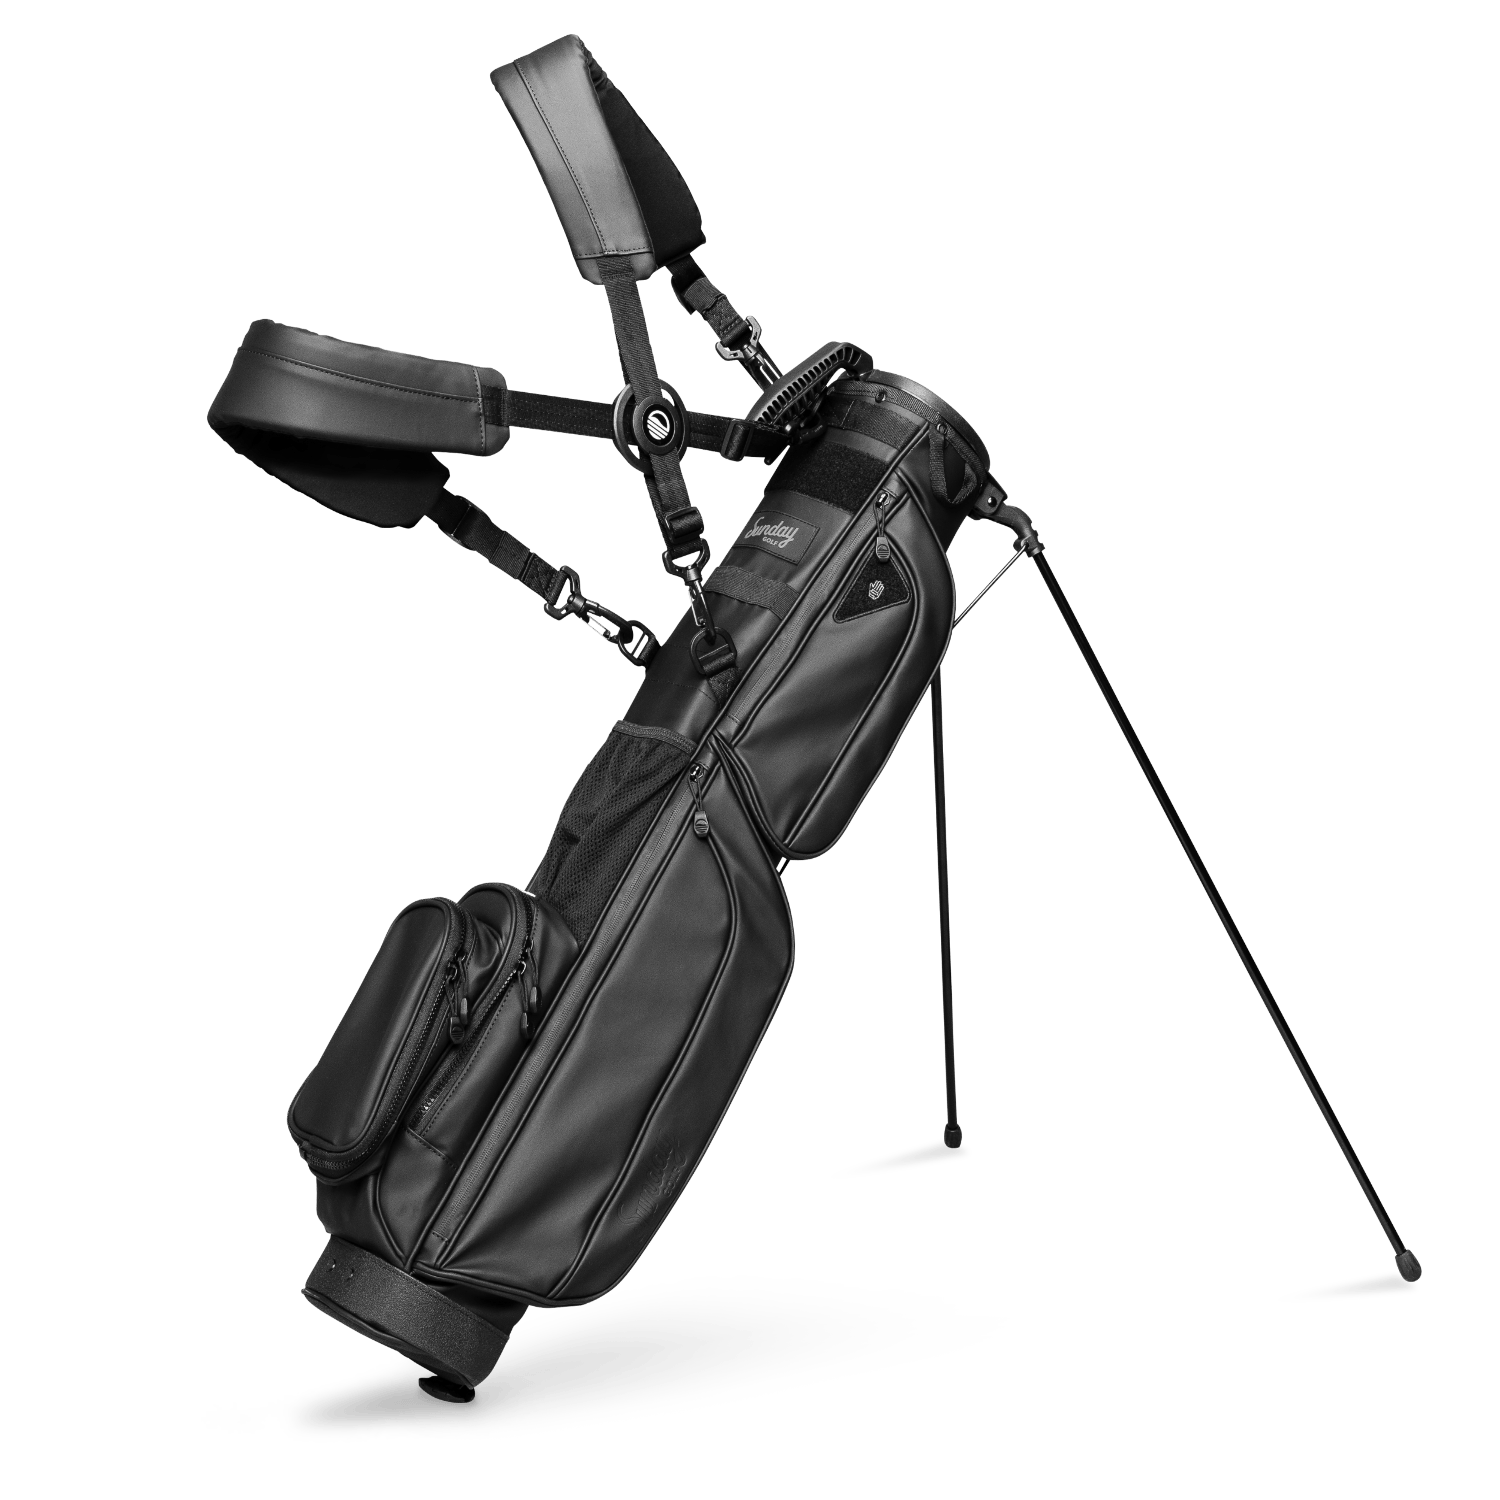 Sunday Golf LOMA XL BAG | S-Class